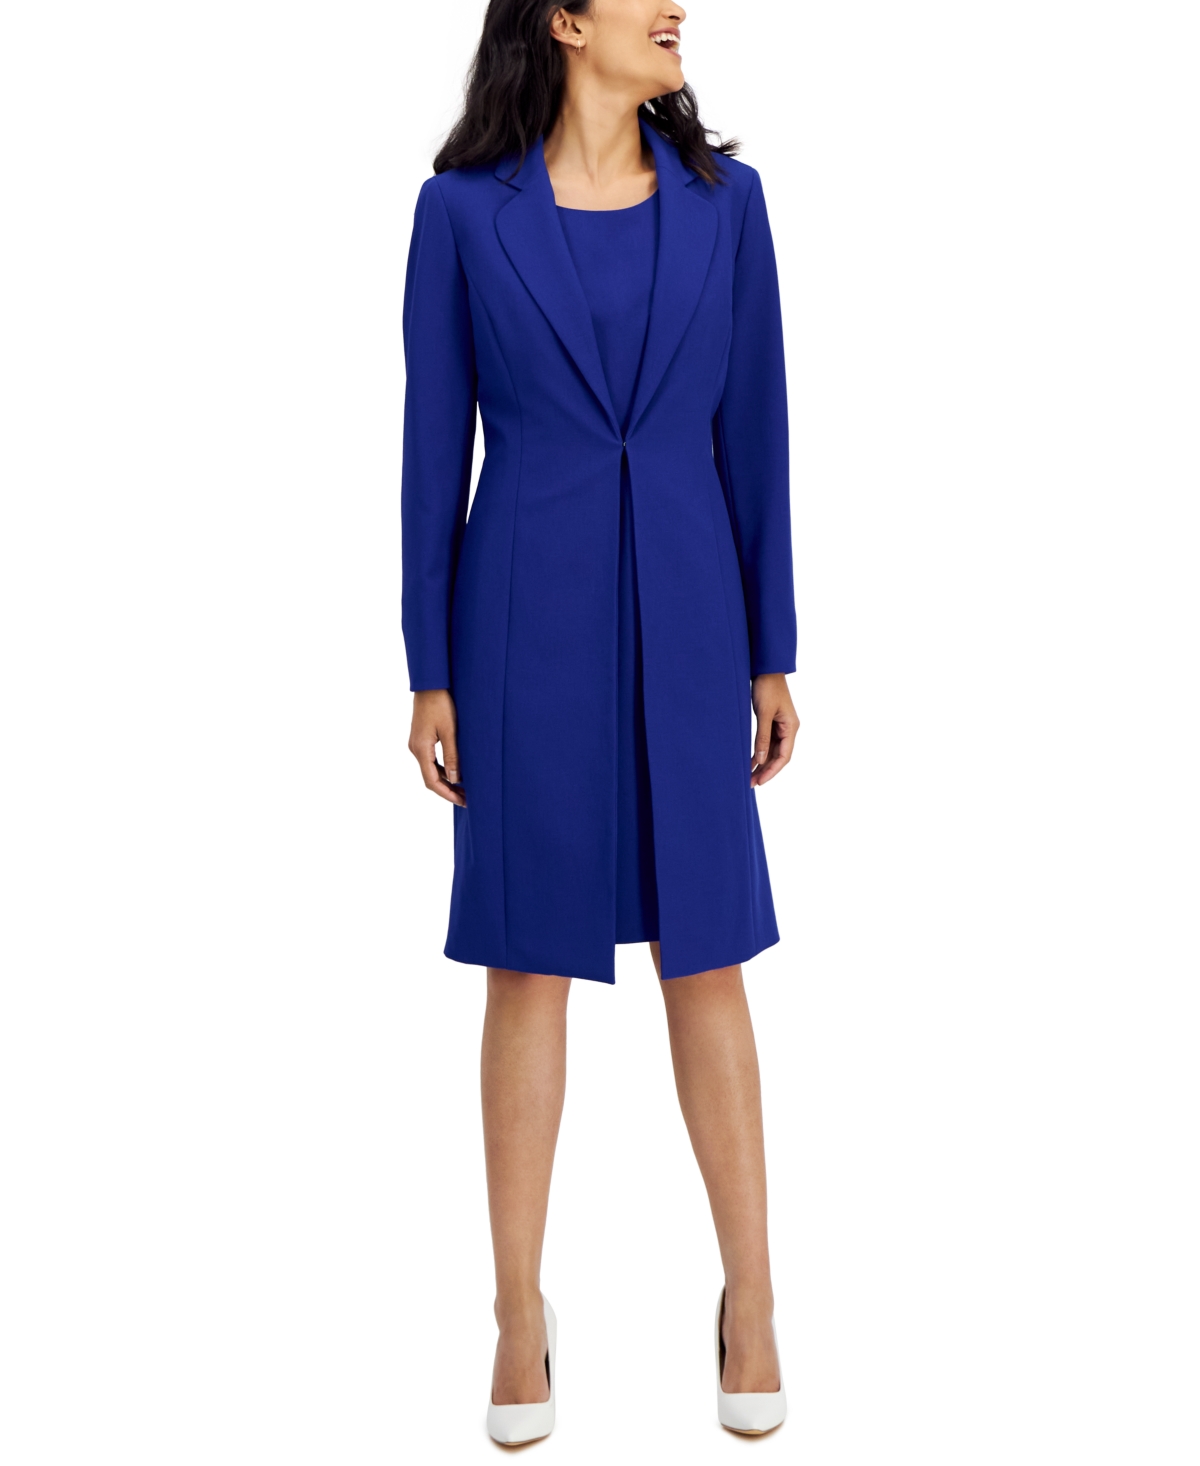 Shop Le Suit Women's Crepe Topper Jacket & Sheath Dress Suit, Regular And Petite Sizes In Celeste Blue